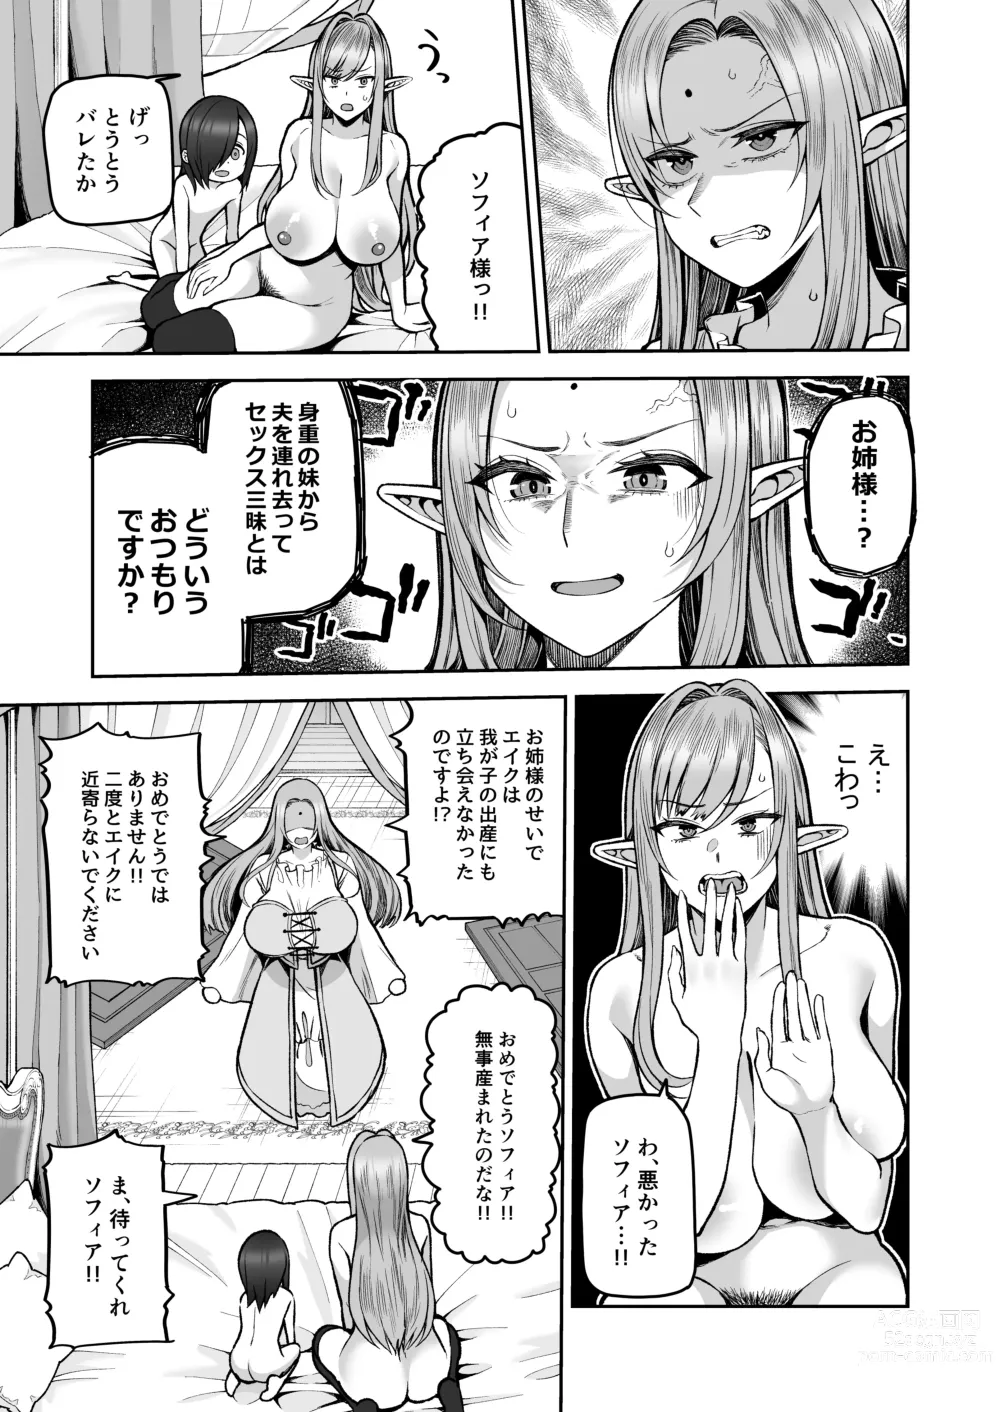 Page 19 of doujinshi 200 Nen Mono Shojo Elf Shota o Kau 2